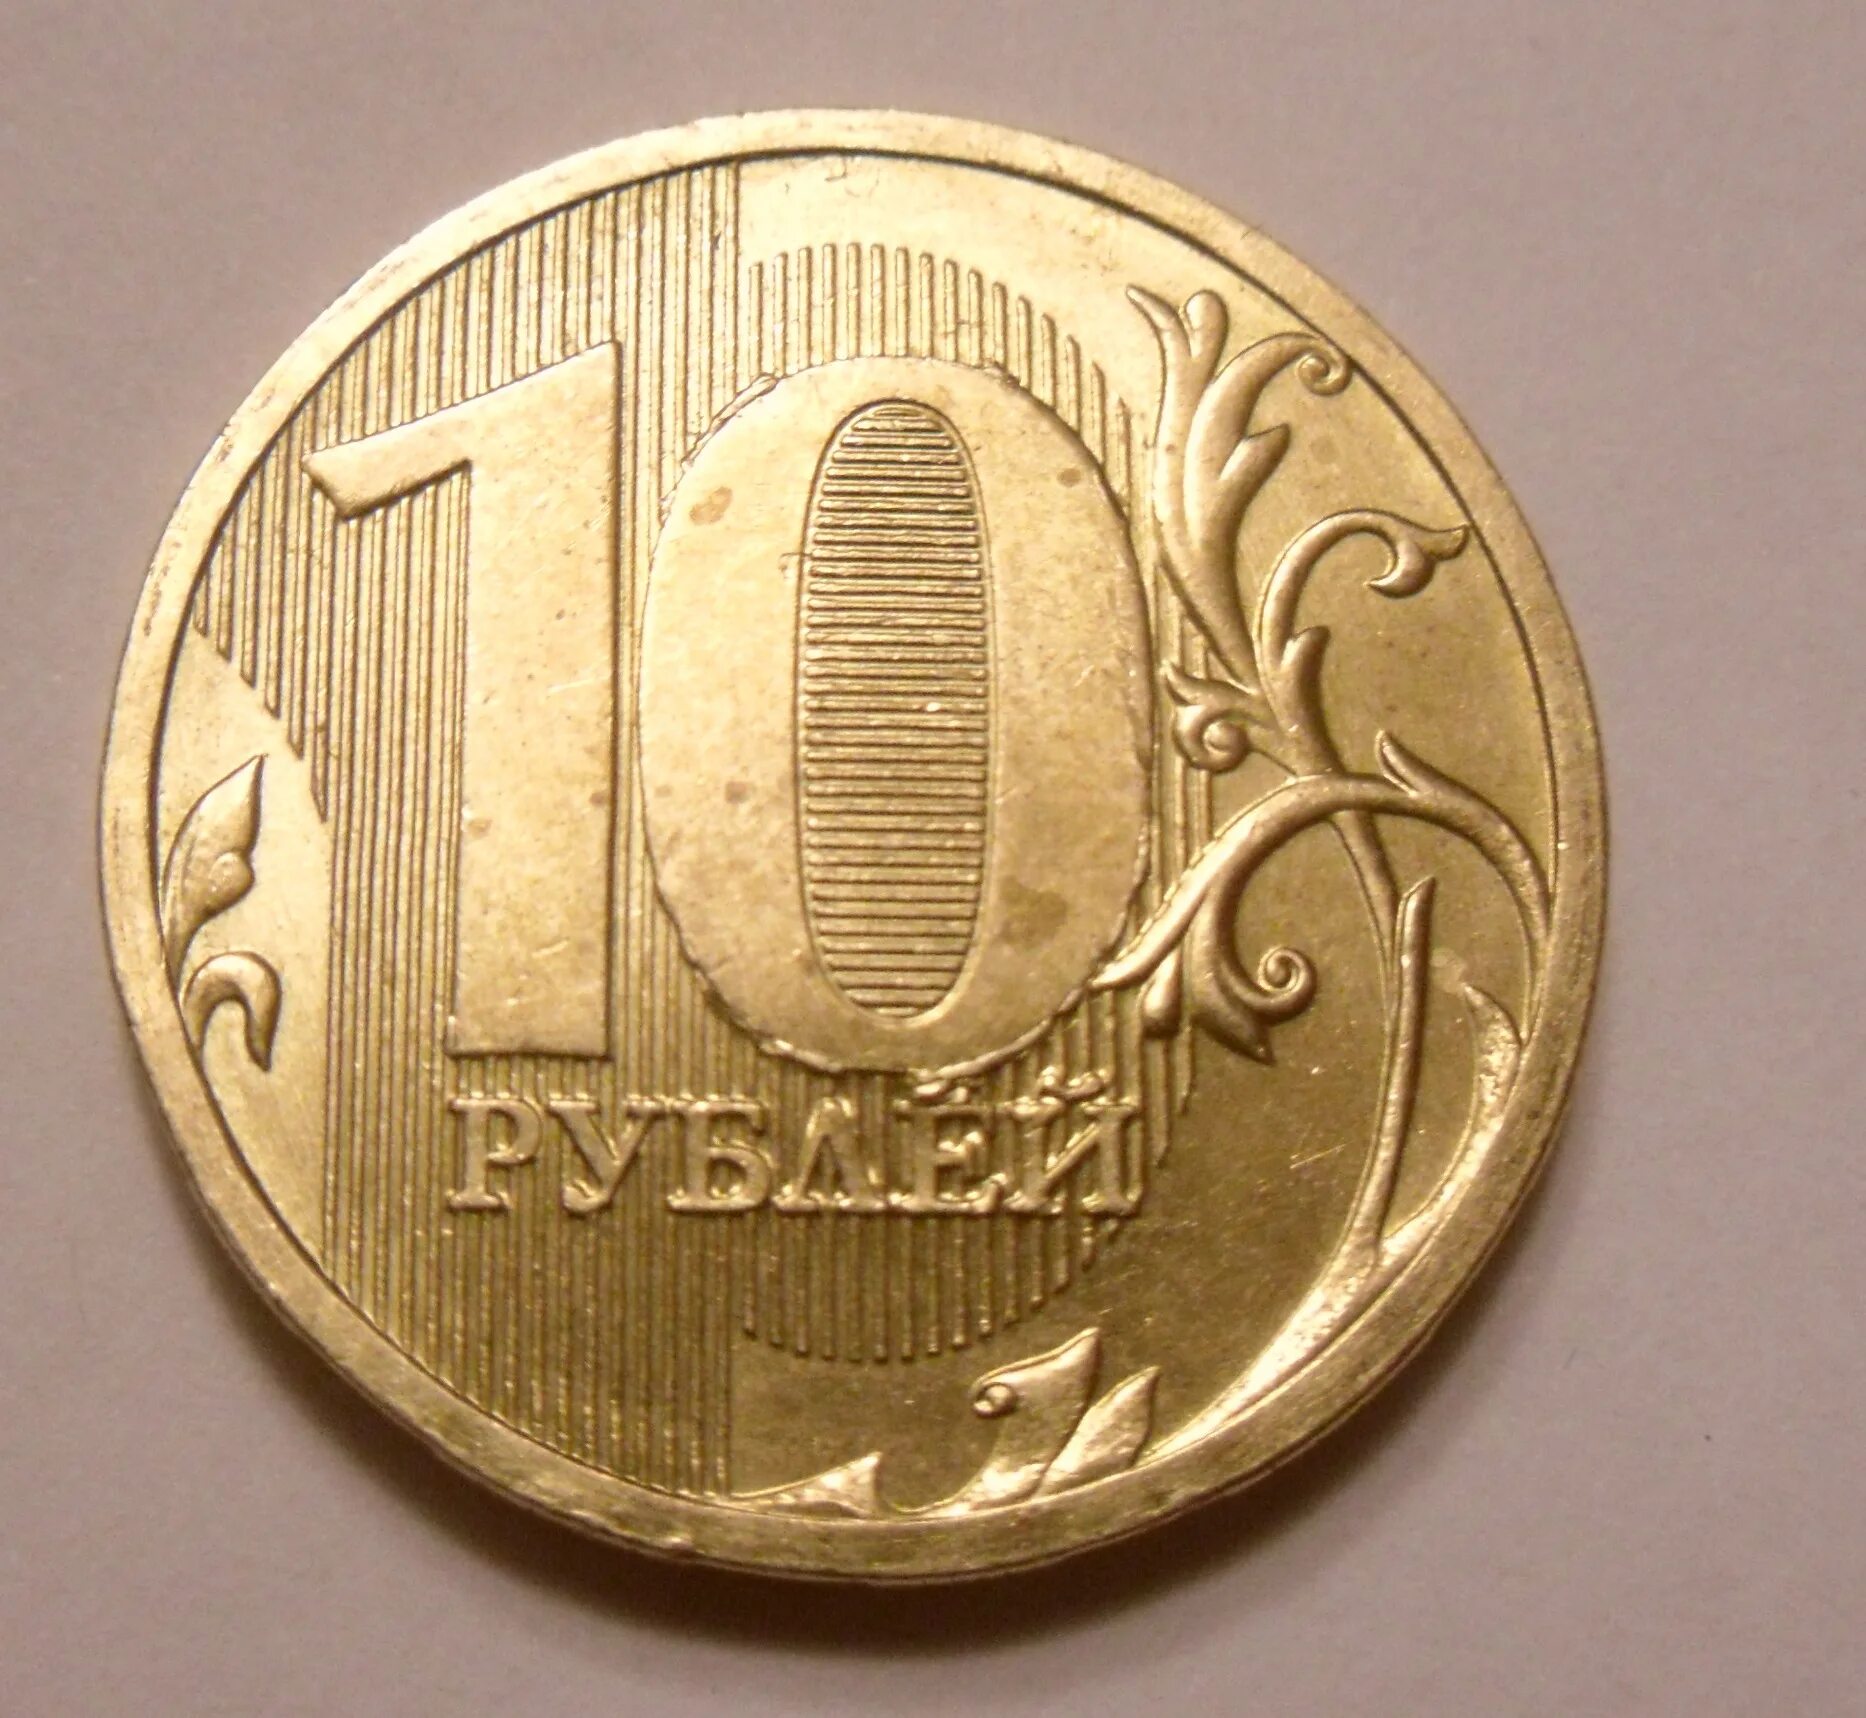 1 минута 10 рублей. 10 Рублей 2010 брак. 10р СМД. Бракованная монета 10 рублей. Монета 10 рублей 2010.